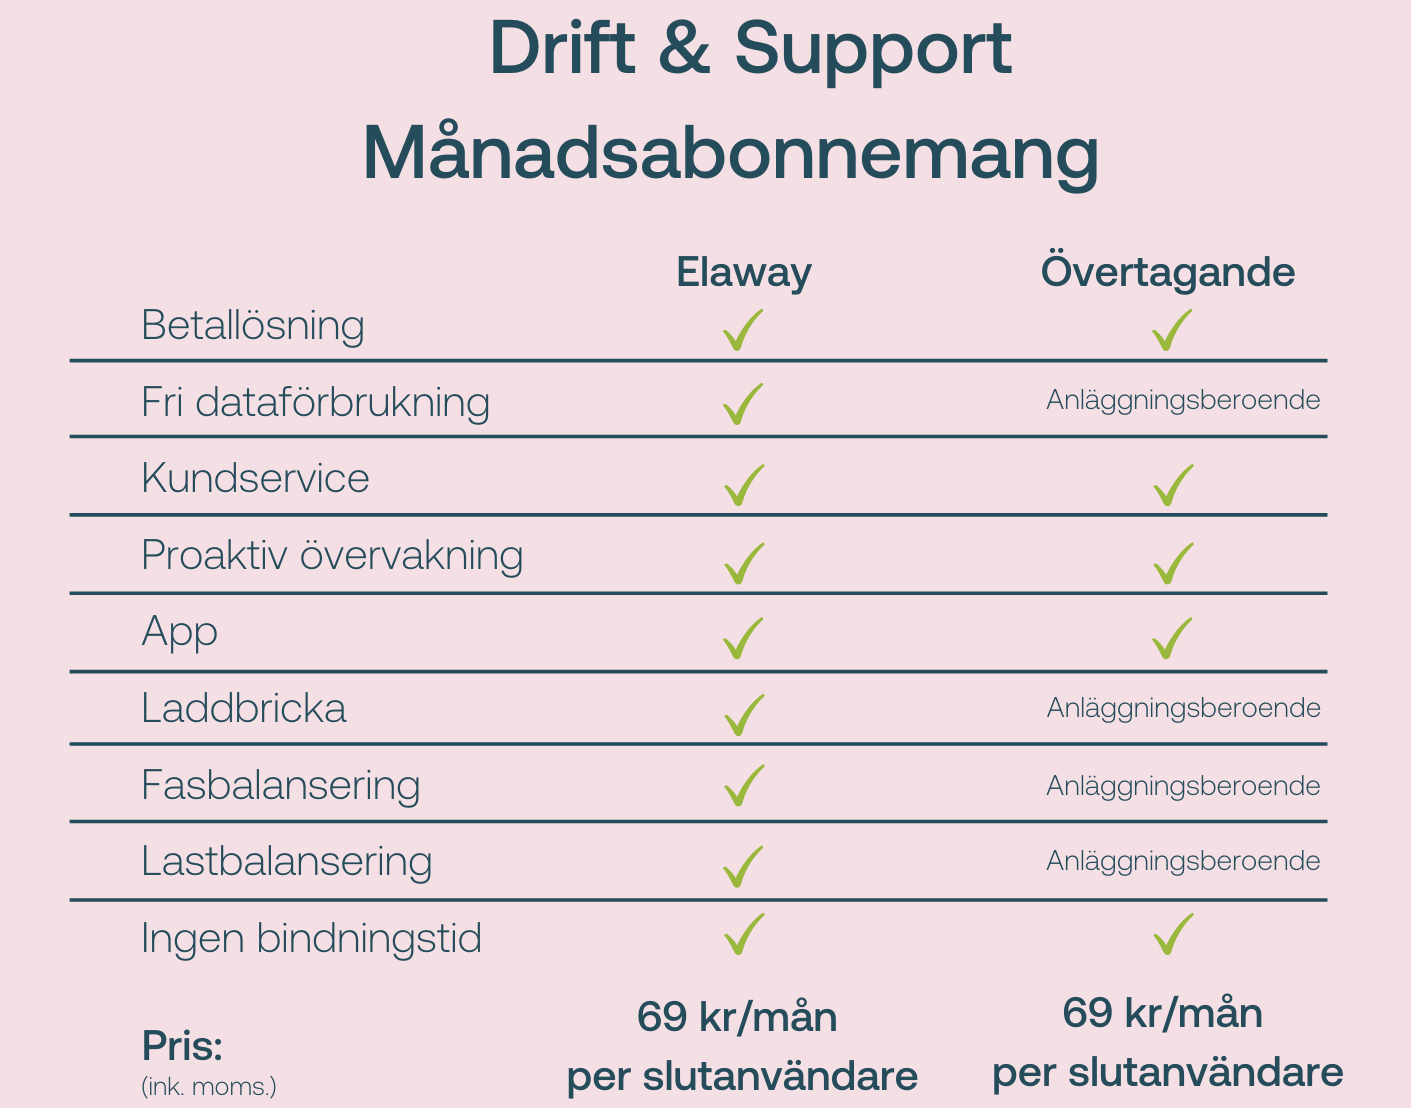 Drift & support